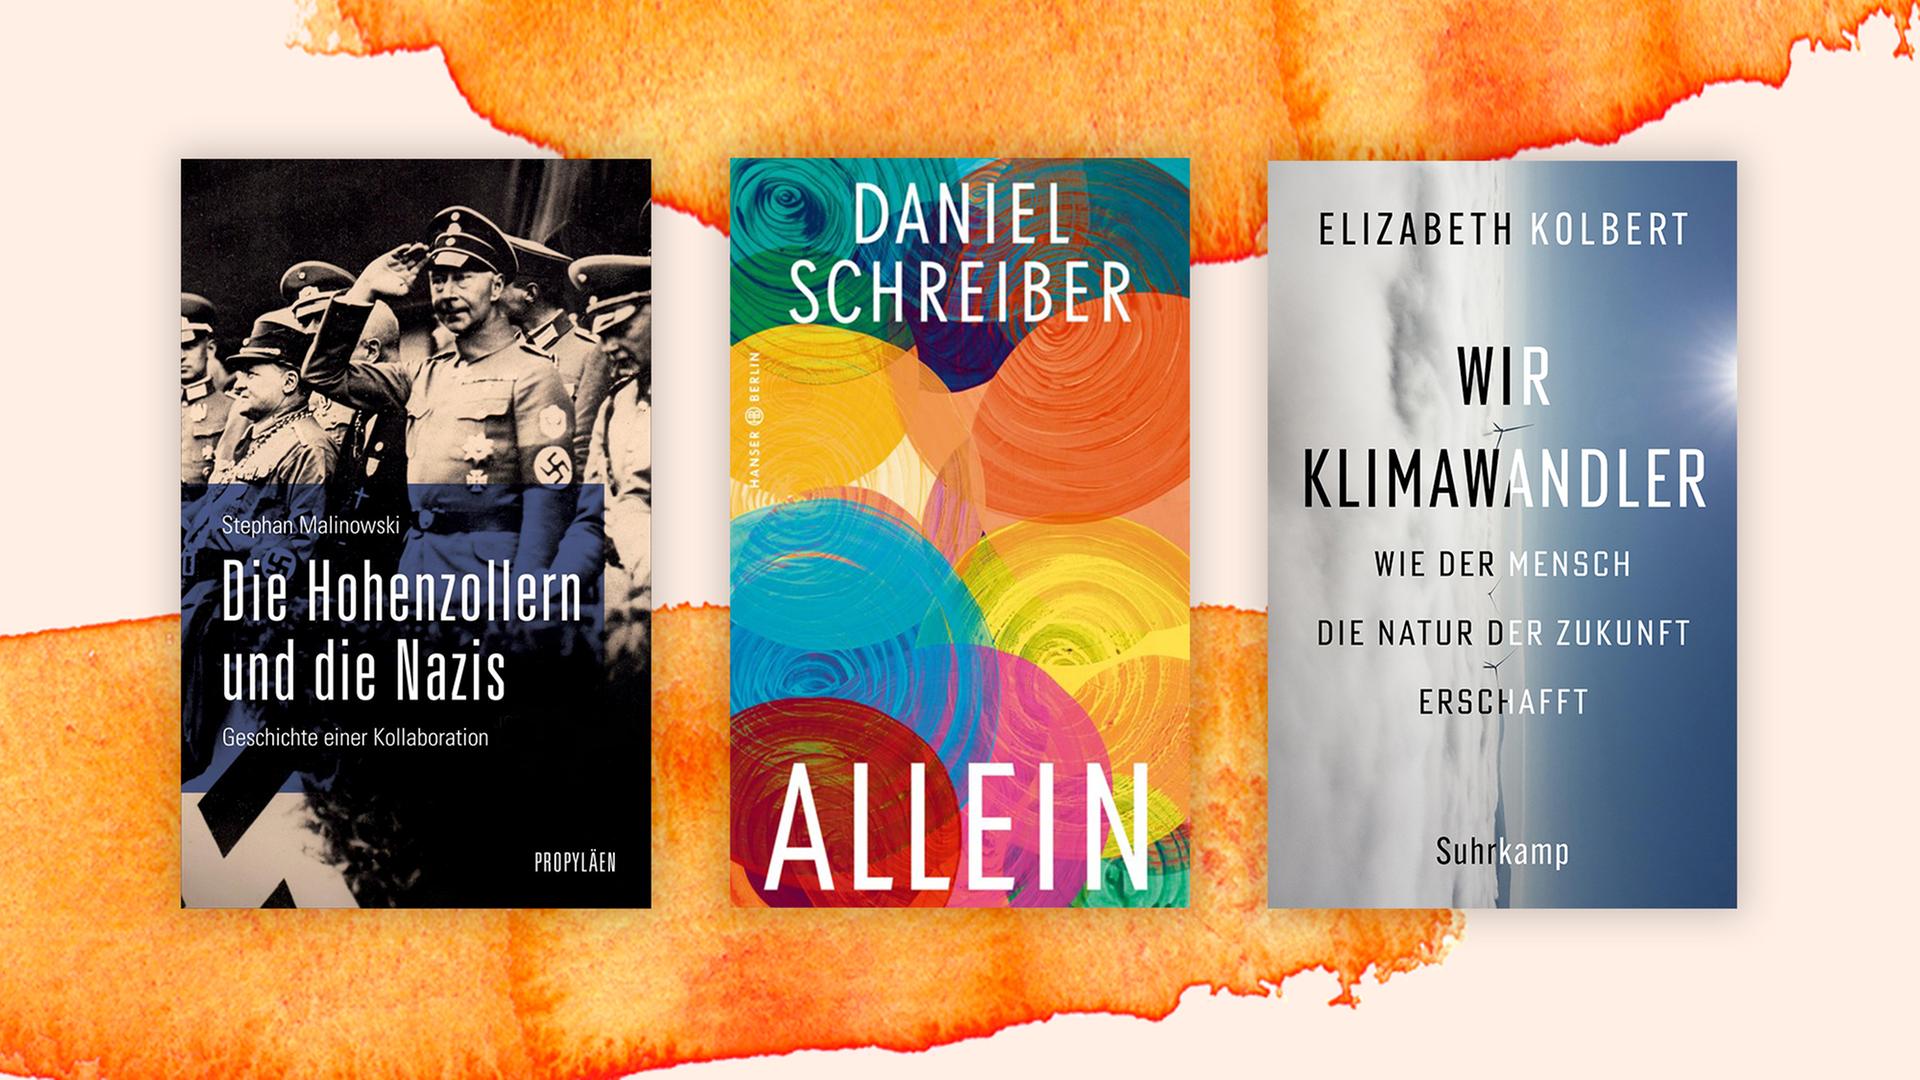 Die Top drei der Sachbuchbestenliste: "Die Hohenzollern und die Nazis" von Stephan Malinowski, "Allein" von Daniel Schreiber und "Wir Klimawandler" von Elizabeth Kolbert,